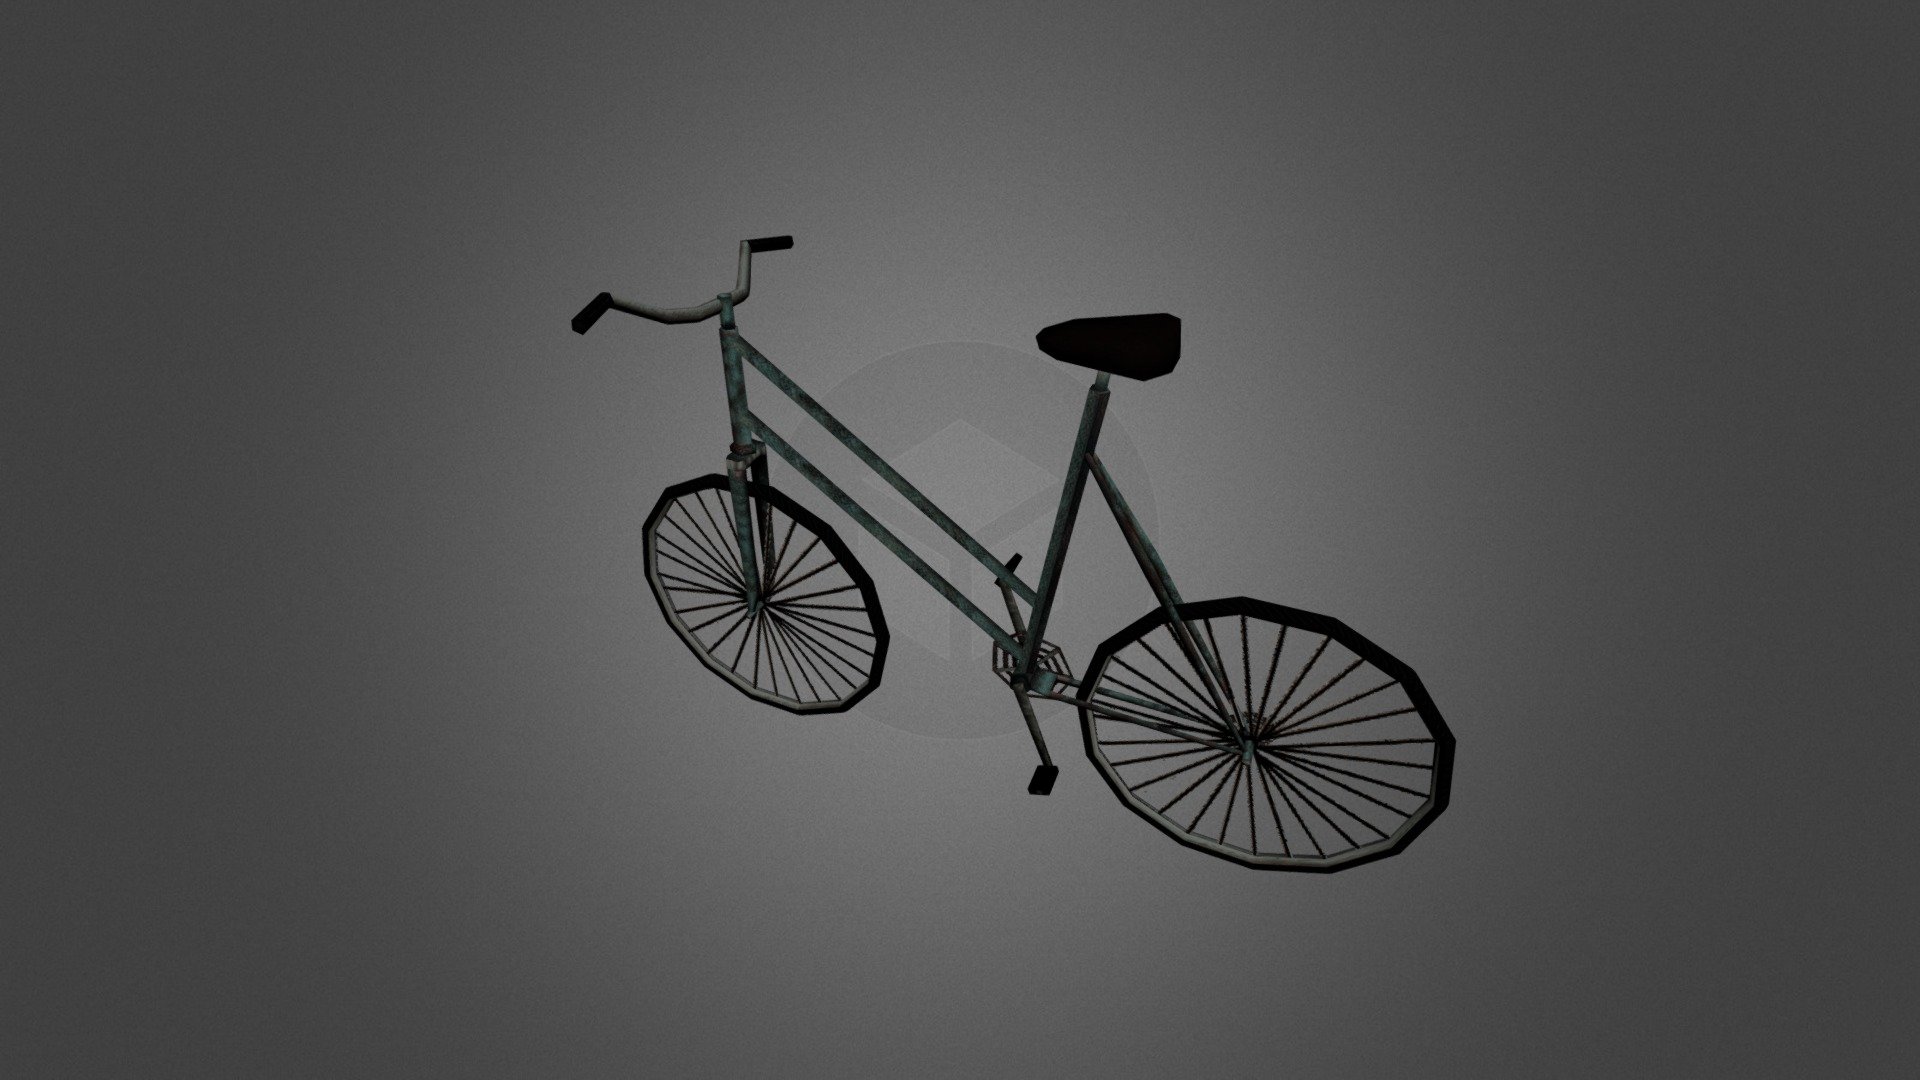 Old Bicycle - 3D model by bishop [11cc2ad] - Sketchfab